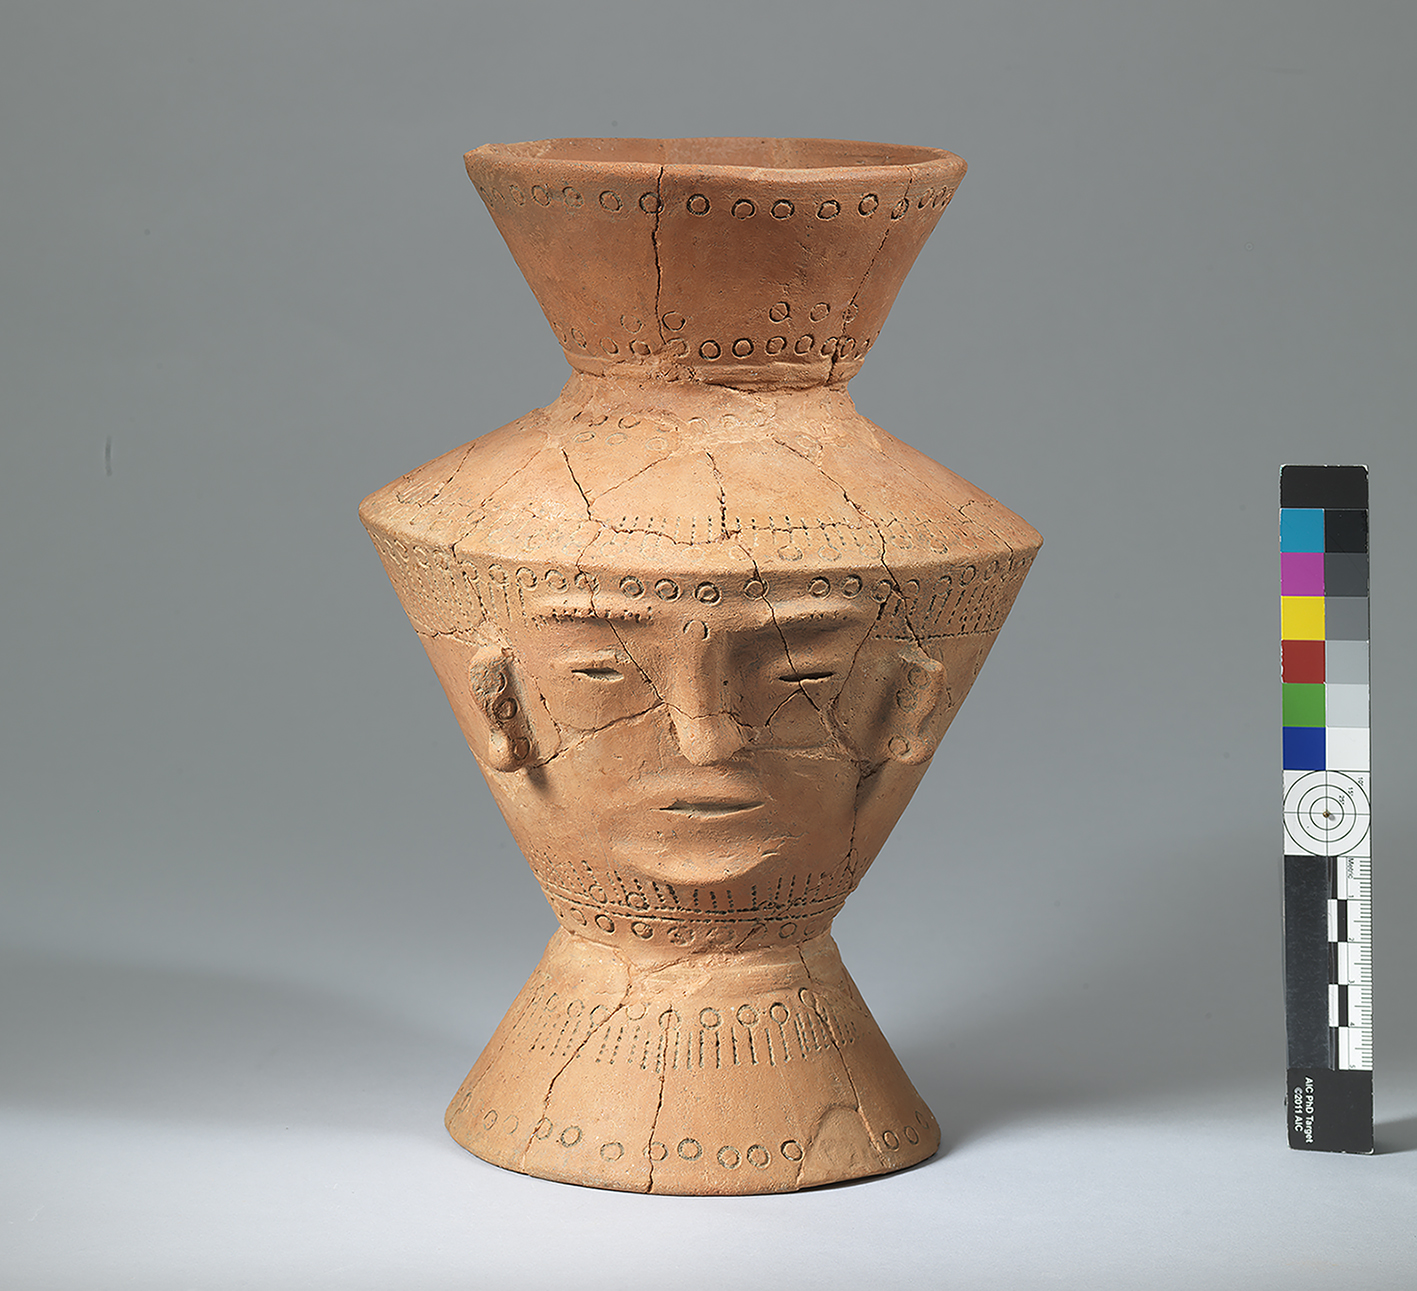 人面陶罐 Red Sandy Ceramic Vessel with Human Face/中央研究院歷史語言研究所 Institute of History and Philology, Academia Sinica